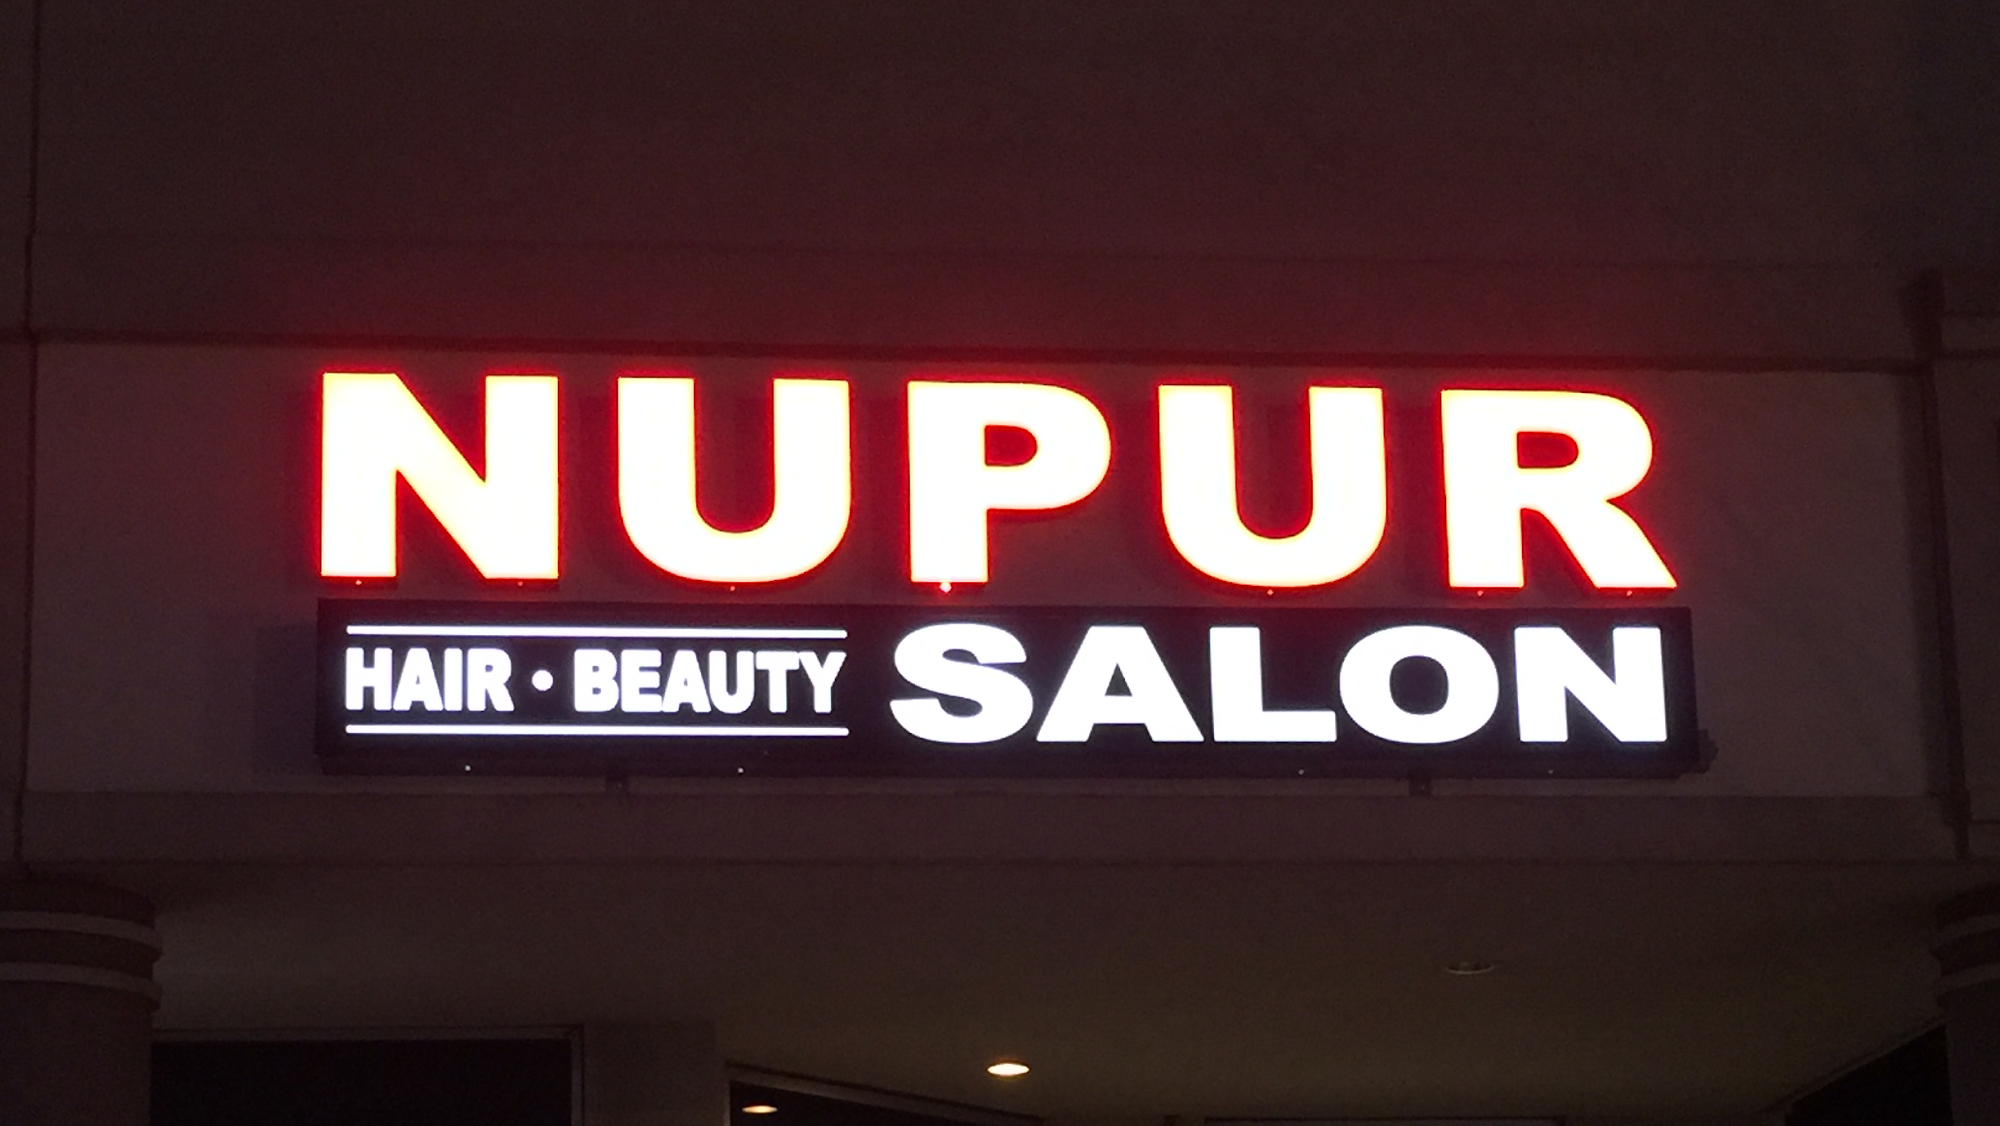 Nupur Hair & Beauty salon